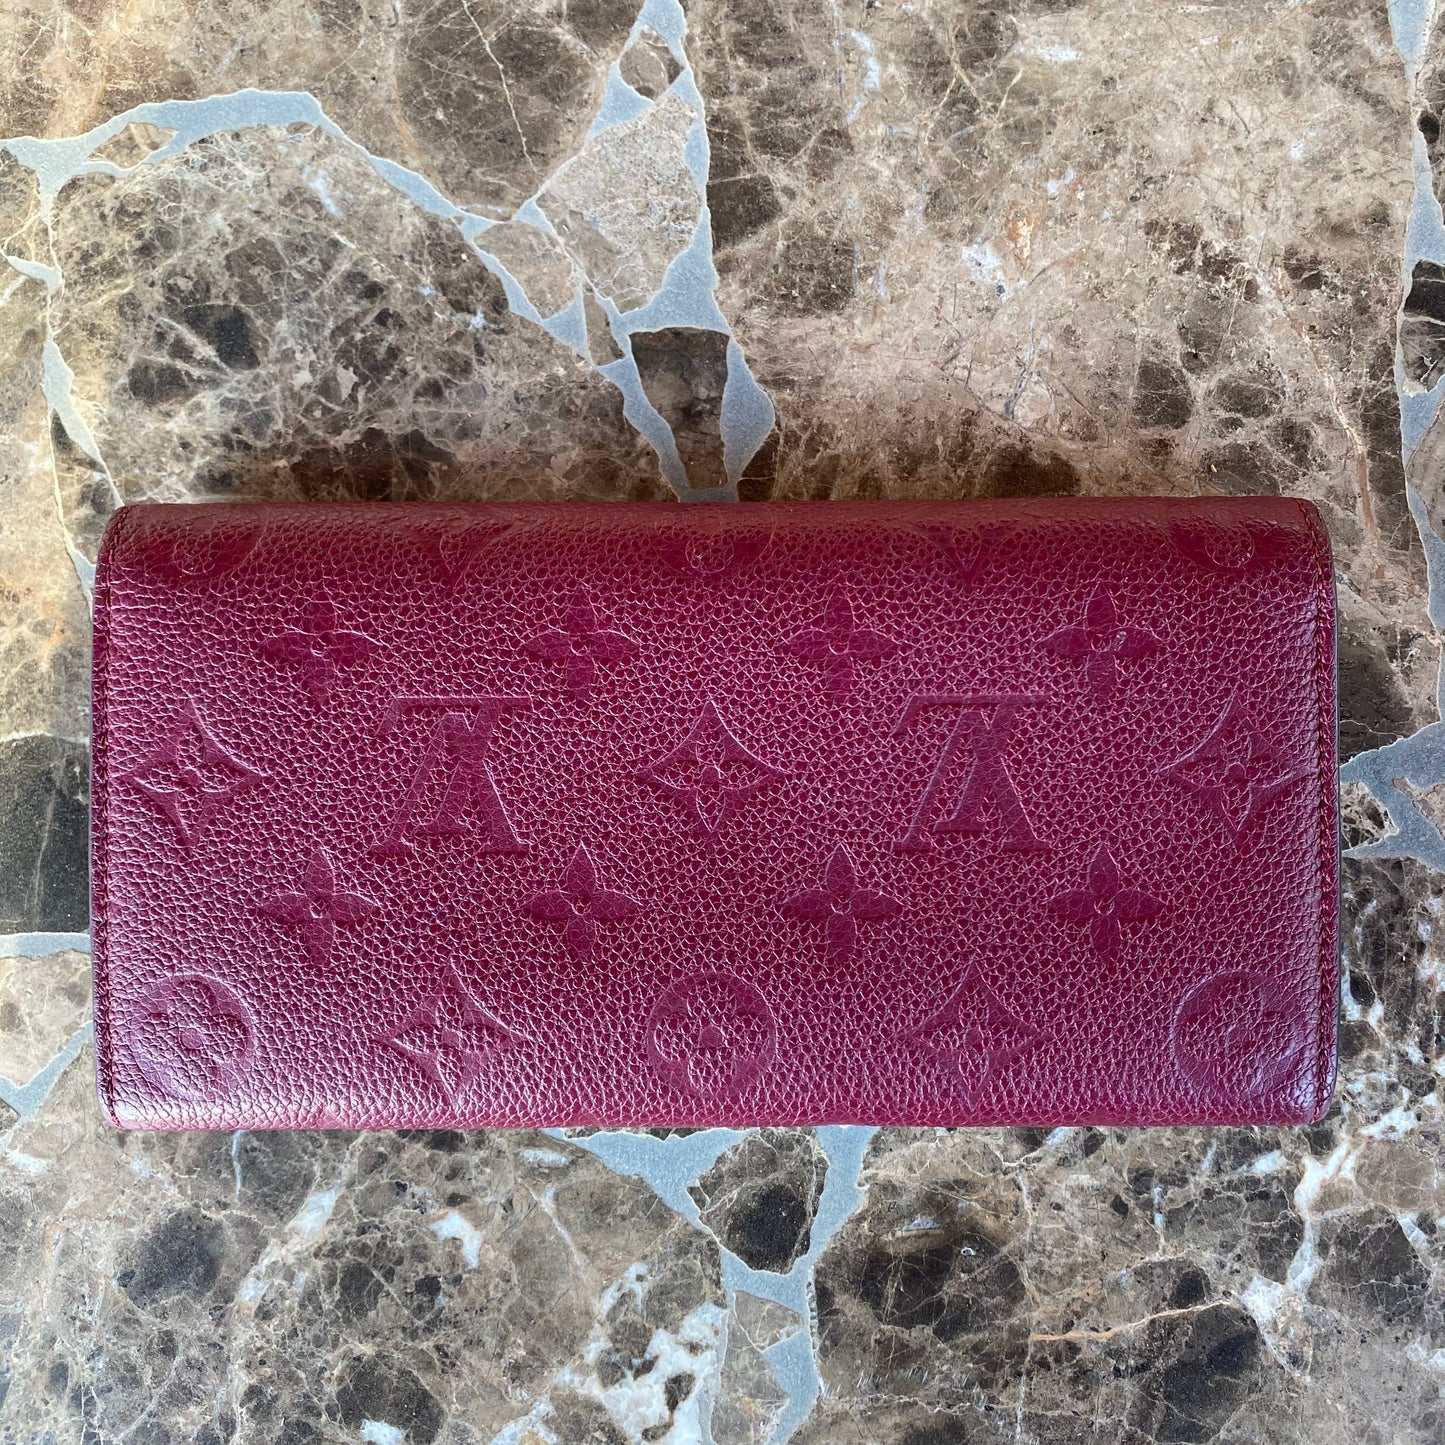 Louis Vuitton Empreinte Emilie Leather Wallet